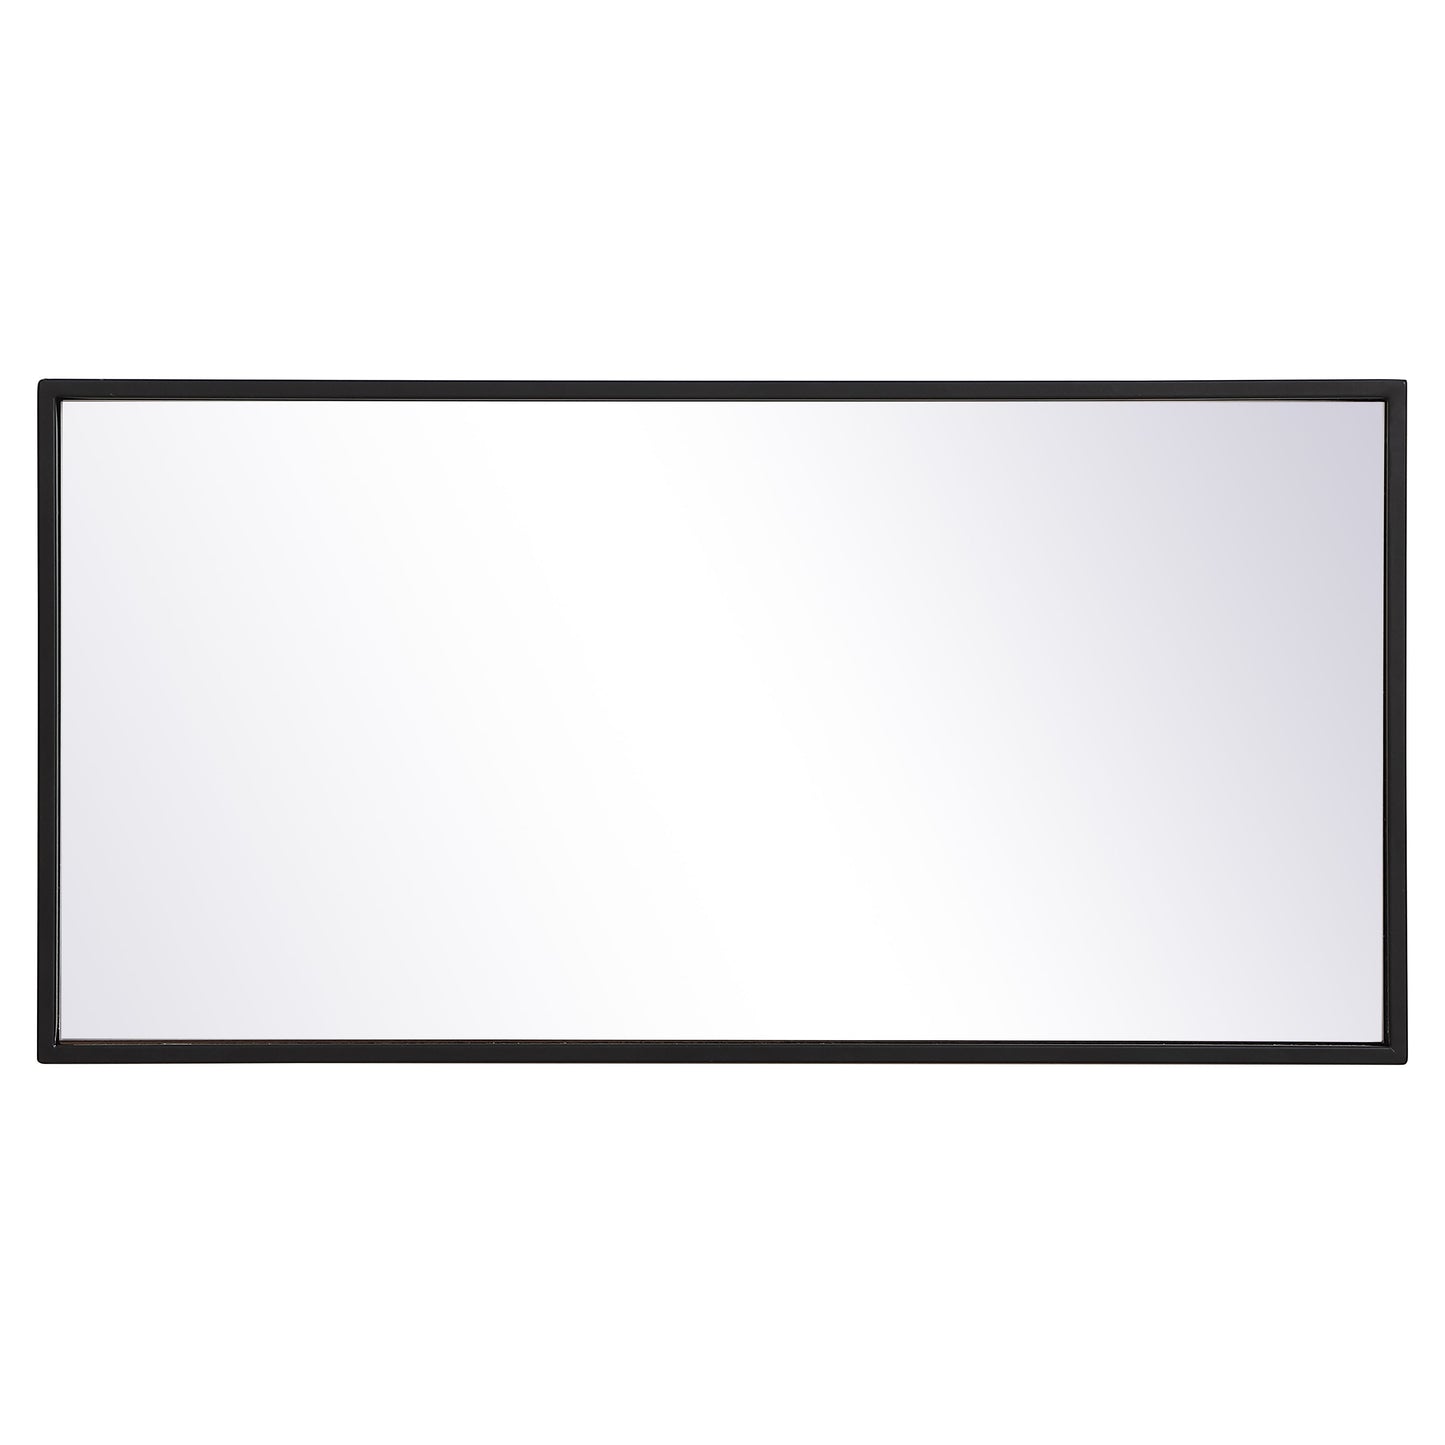 MR41428BK Monet 28" x 14" Metal Framed Rectangular Mirror in Black